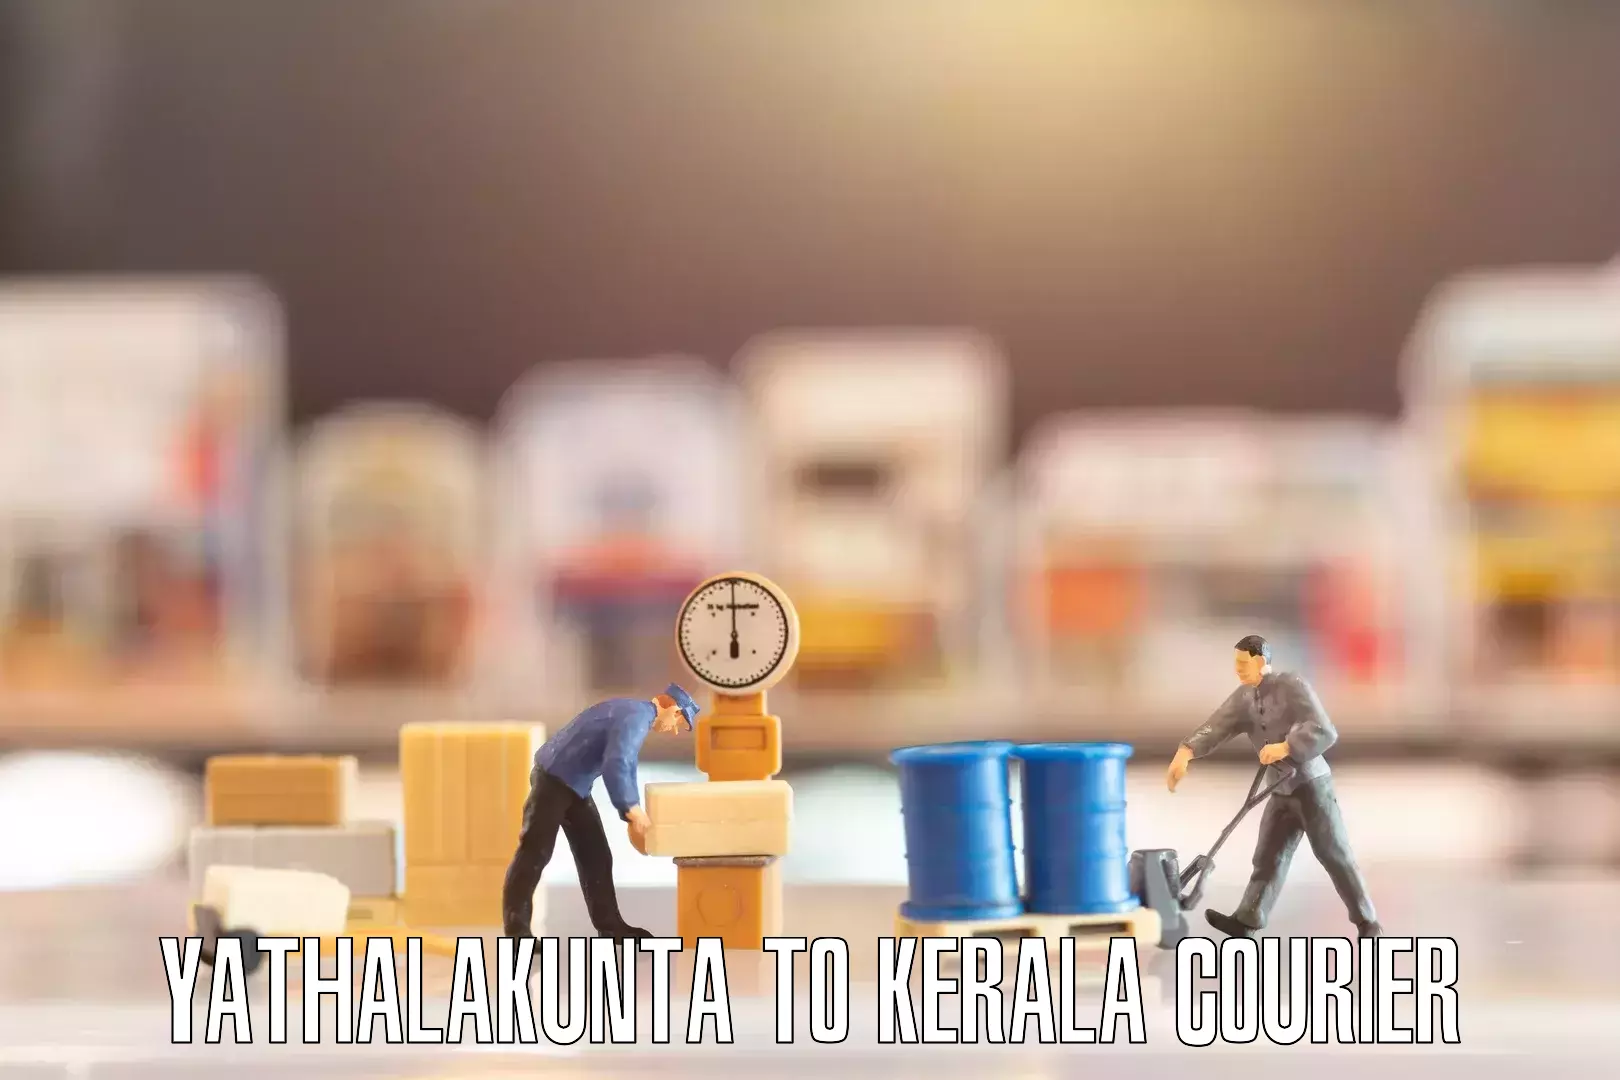 Household goods movers Yathalakunta to Kerala